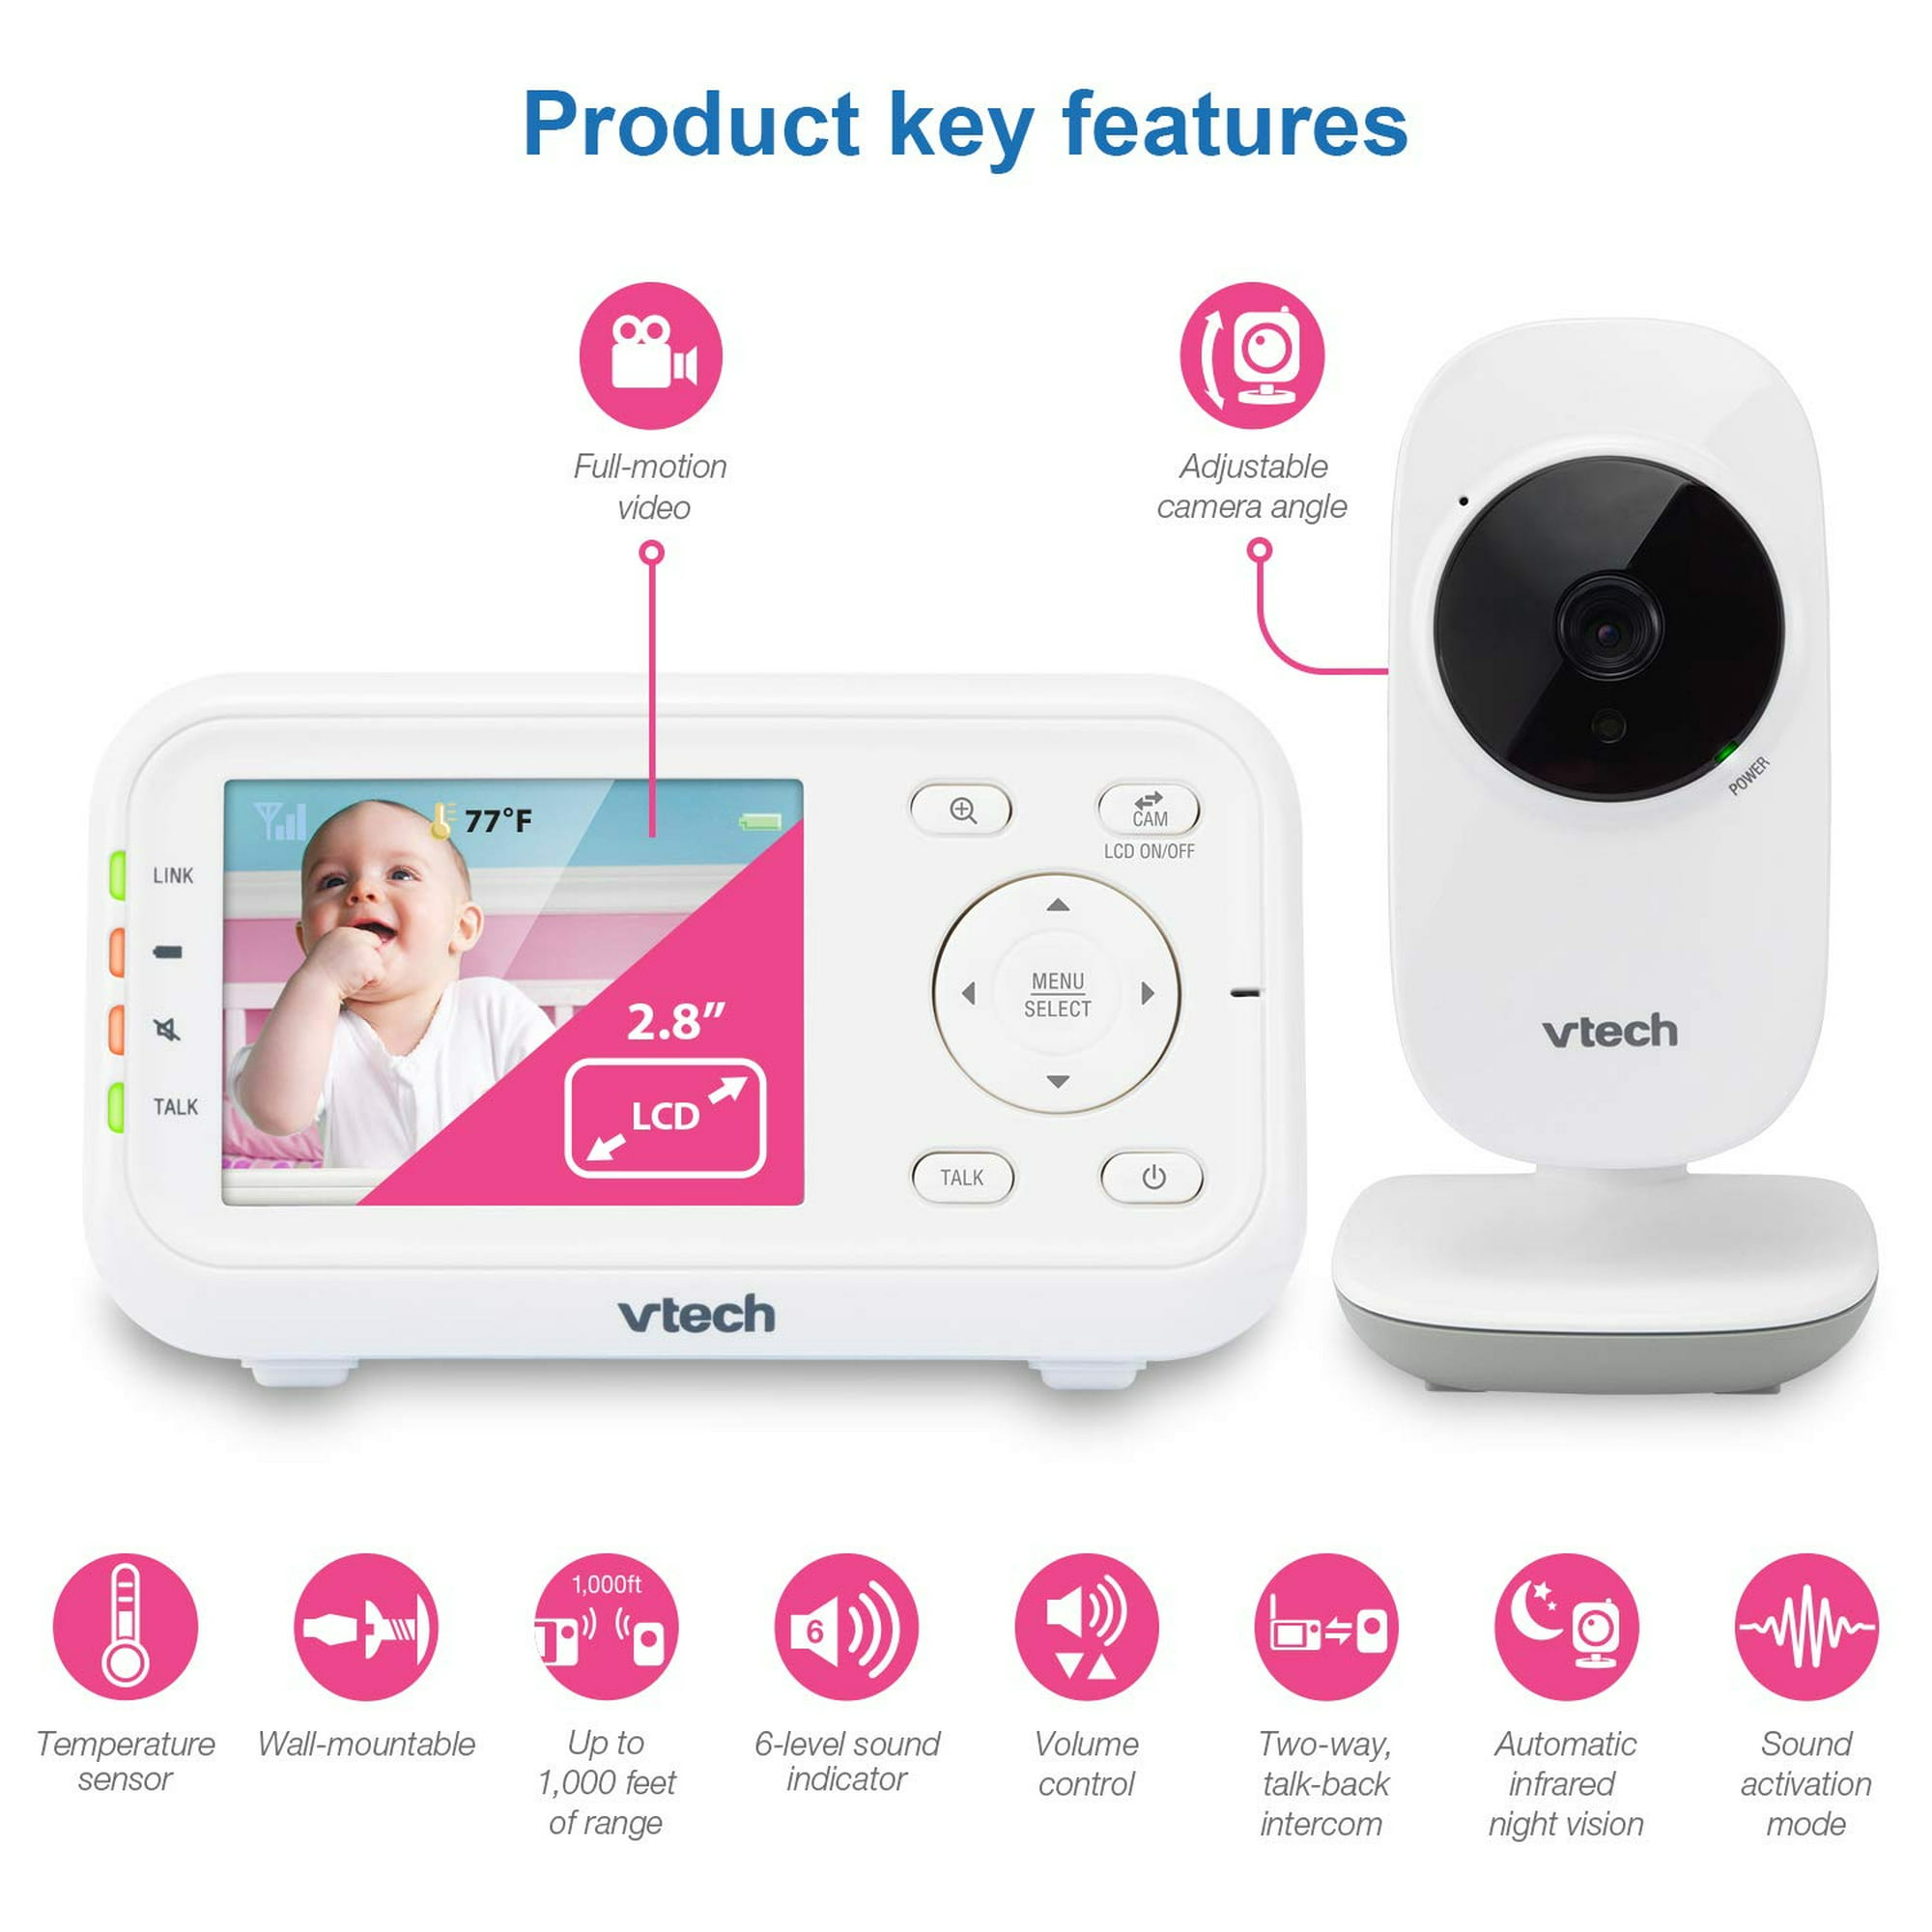 Monitor de bebé con video de pantalla dividida con 2 cámaras y LCD de 4.3  pulgadas, visión nocturna automática, conversación bidireccional, detección